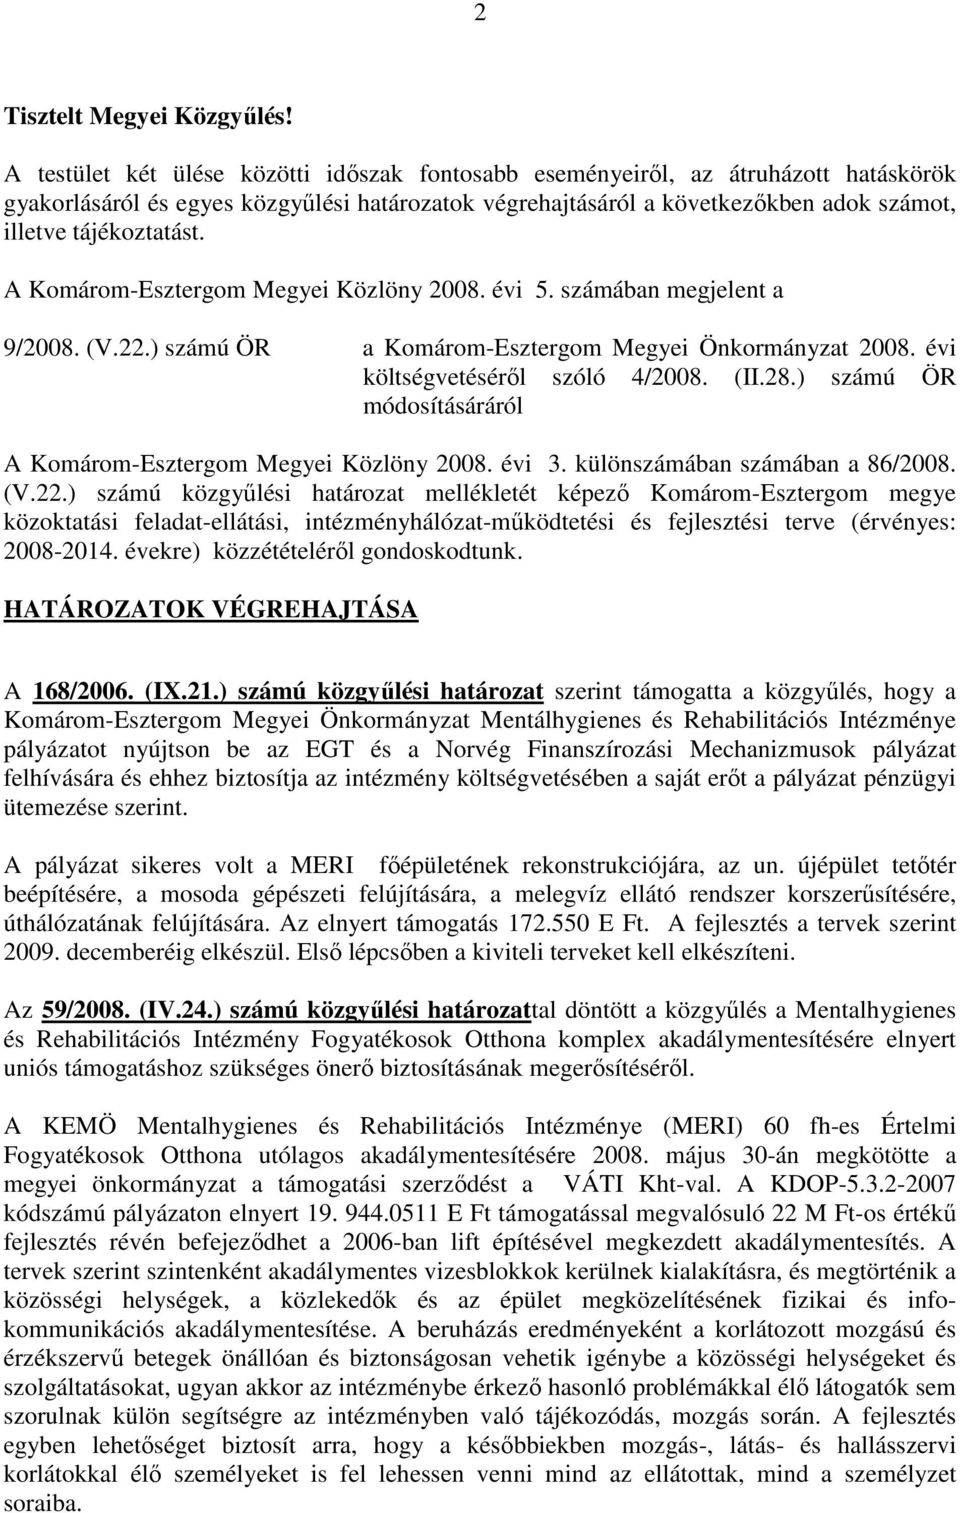 A Komárom-Esztergom Megyei Közlöny 2008. évi 5. számában megjelent a 9/2008. (V.22.) számú ÖR a Komárom-Esztergom Megyei Önkormányzat 2008. évi költségvetésérıl szóló 4/2008. (II.28.